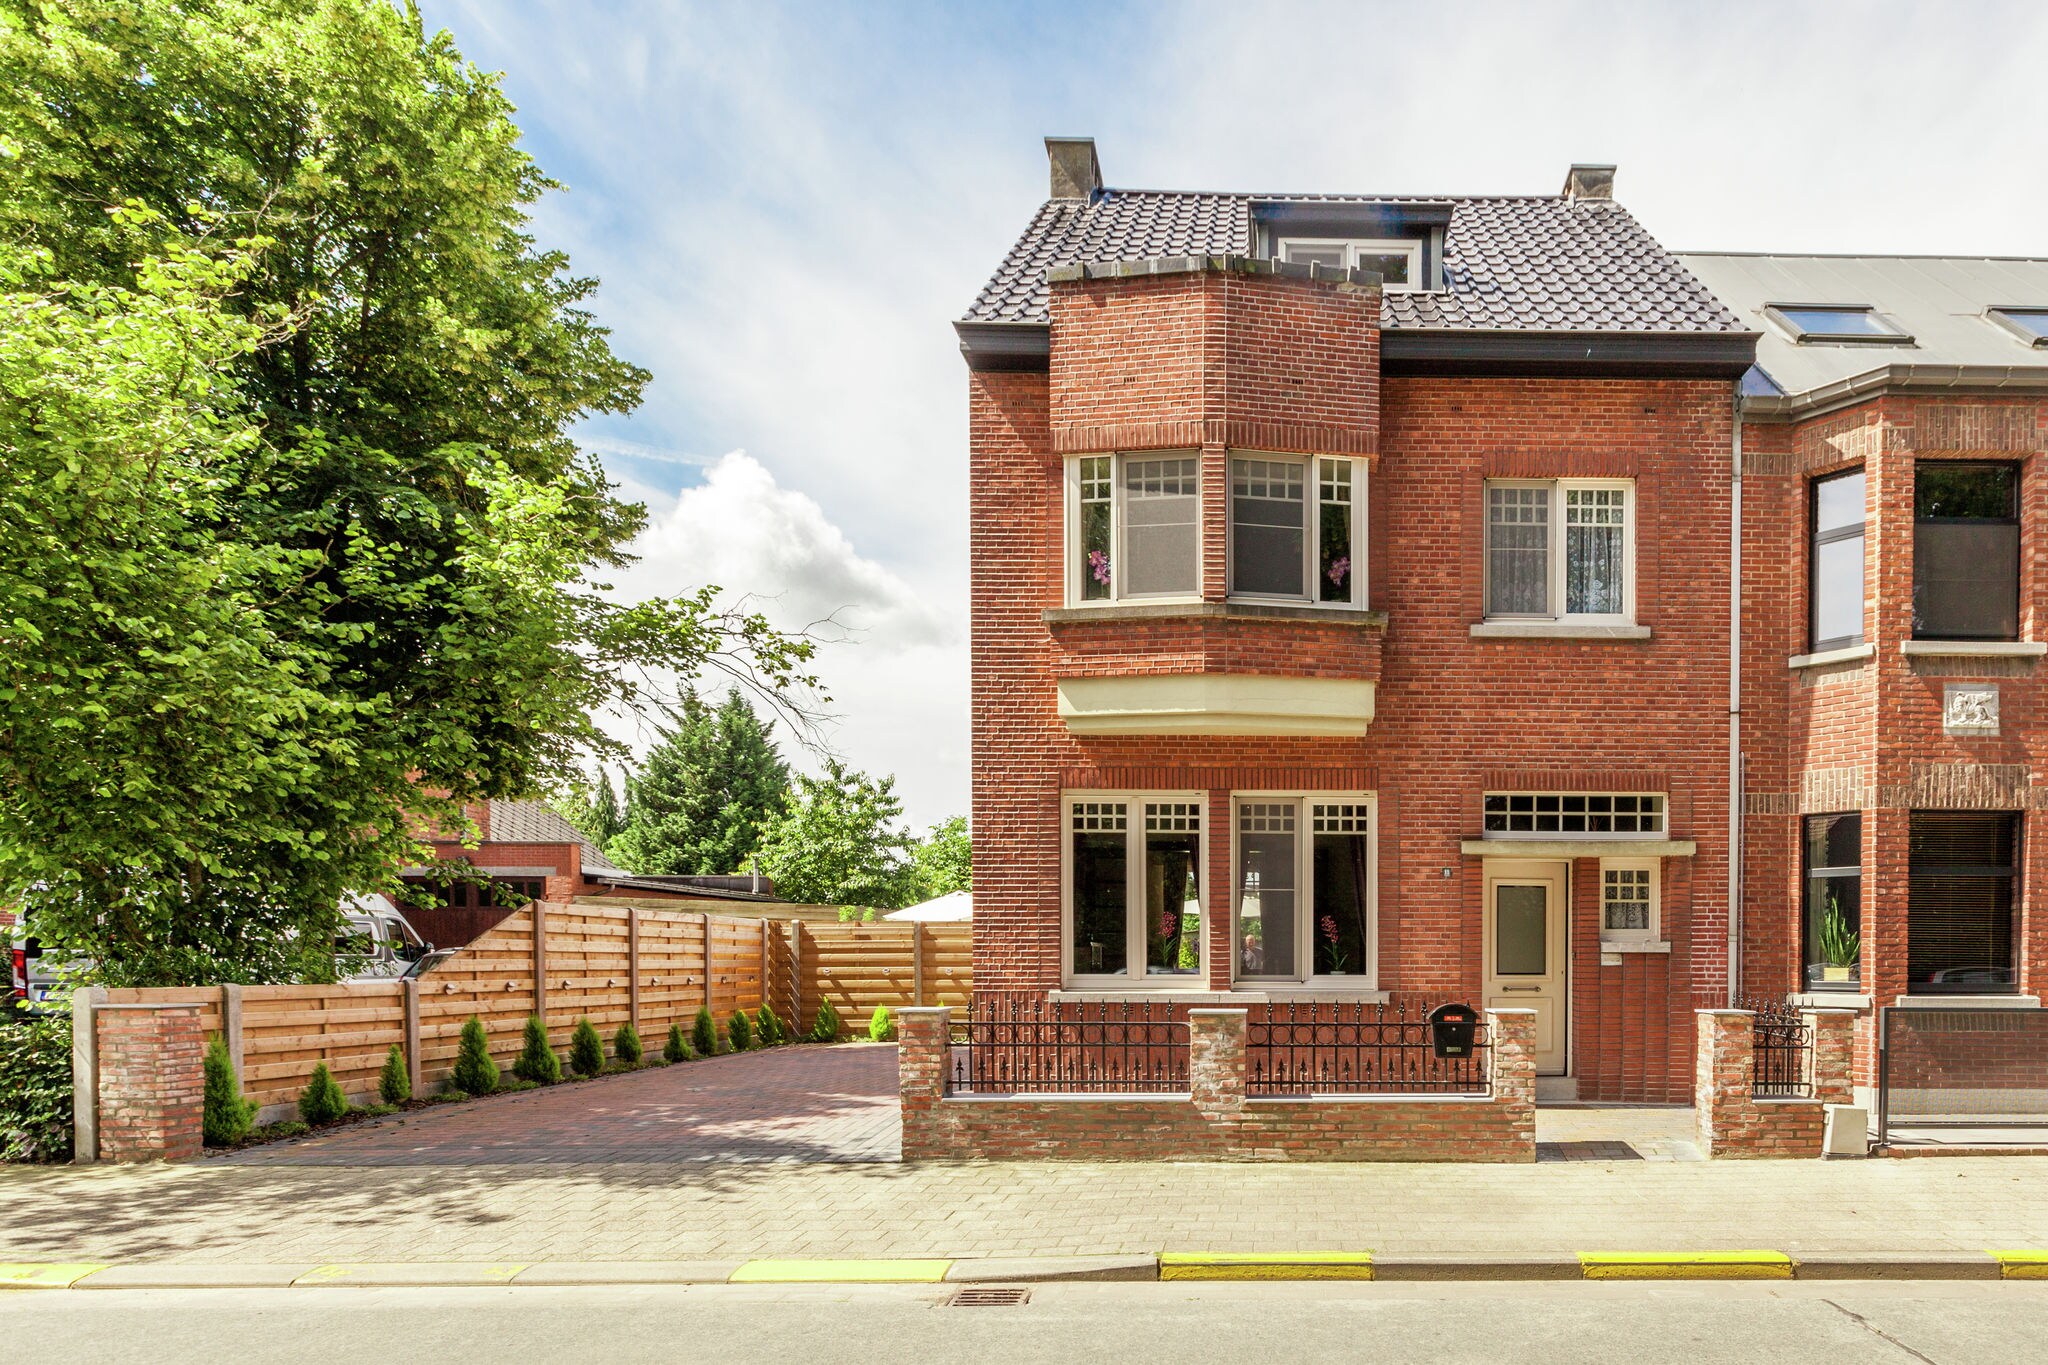 Prachtig huis in Engelse stijl in Mol in de Antwerpse Kempen.